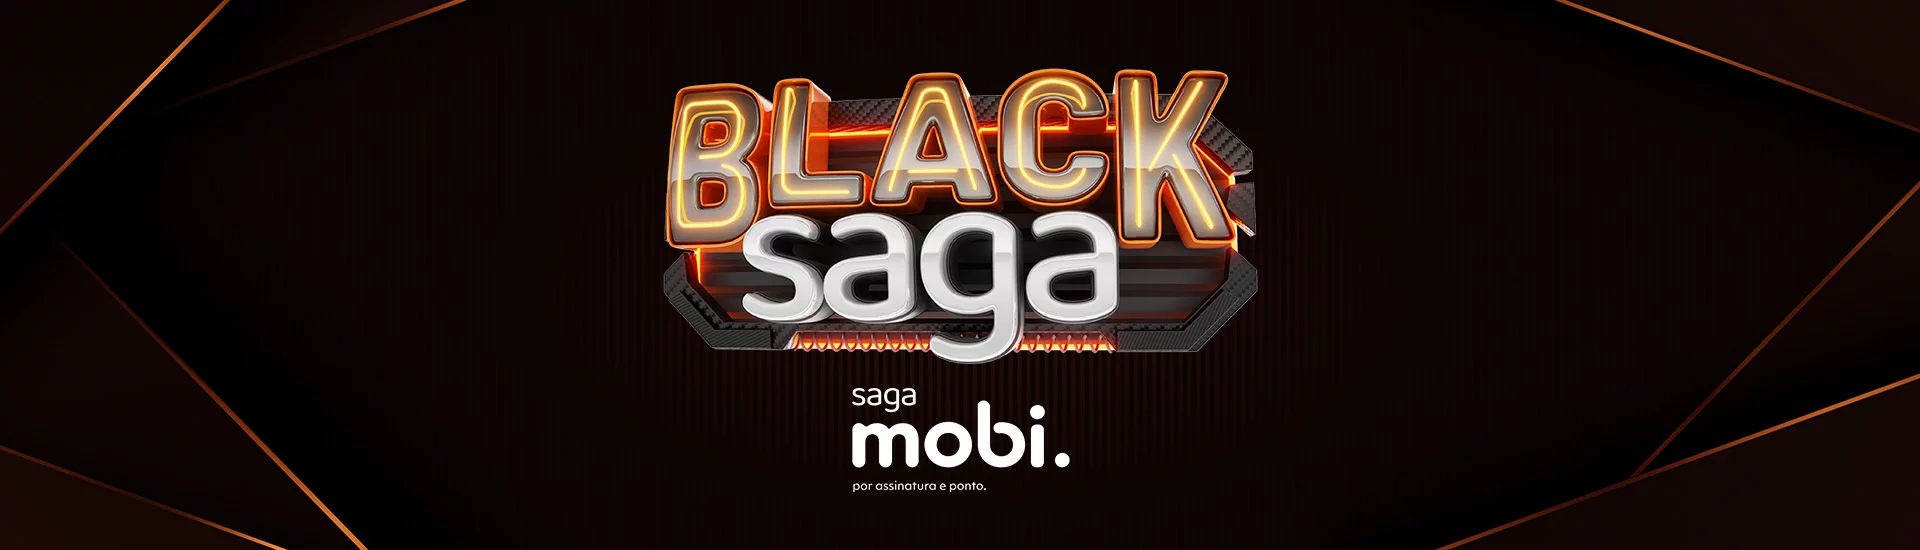 Black Friday Saga Mobi!